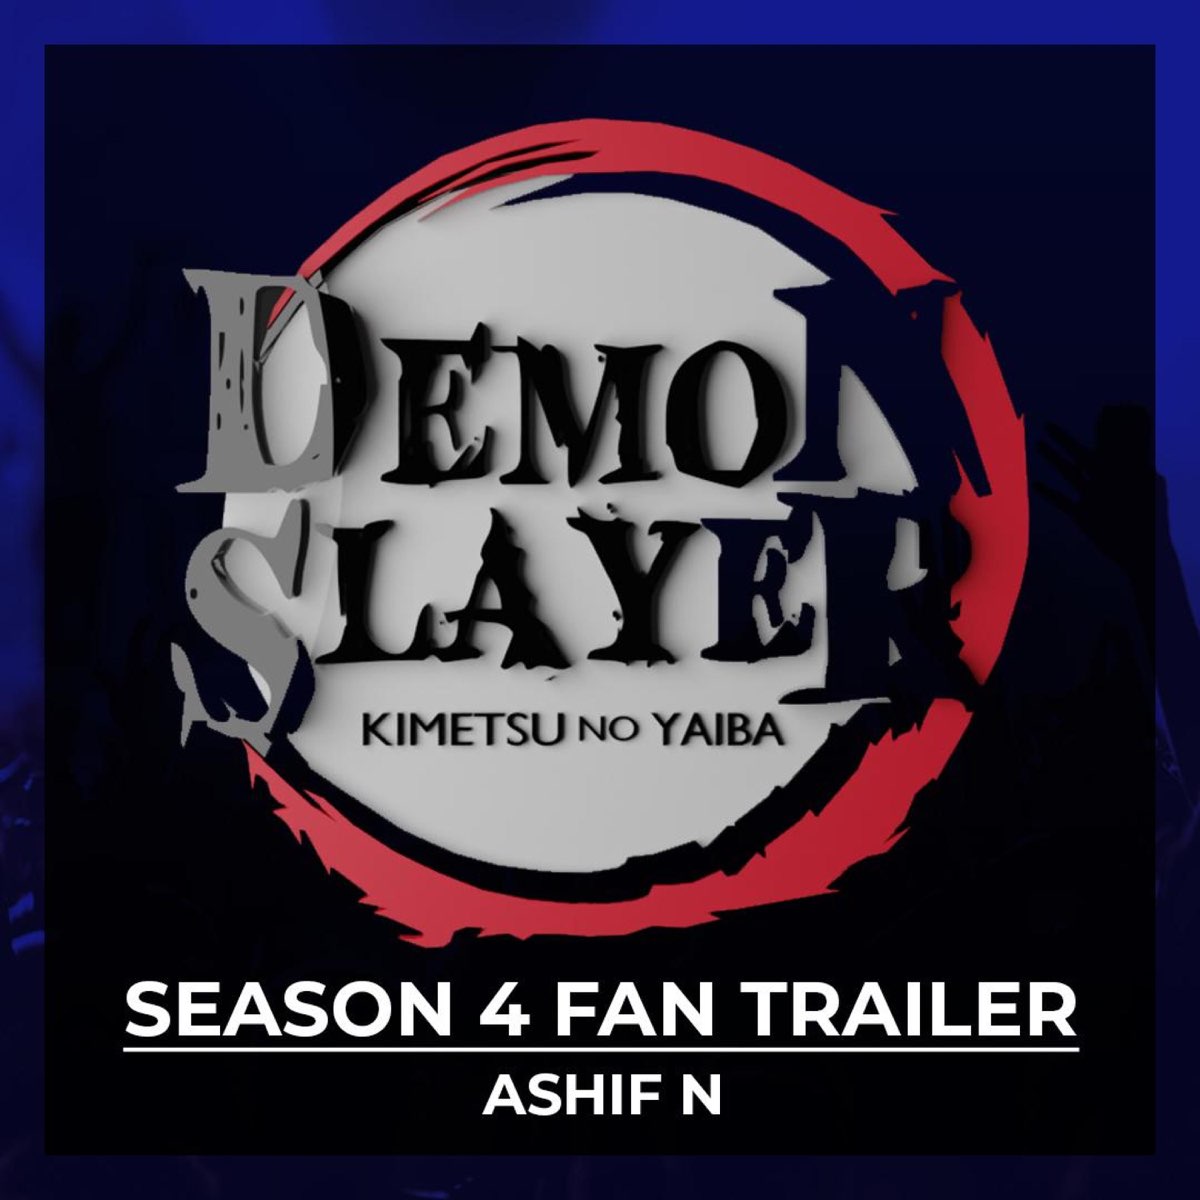 Kizuna No Kiseki: Demon Slayer (Kimetsu No Yaiba Season 3 Opening